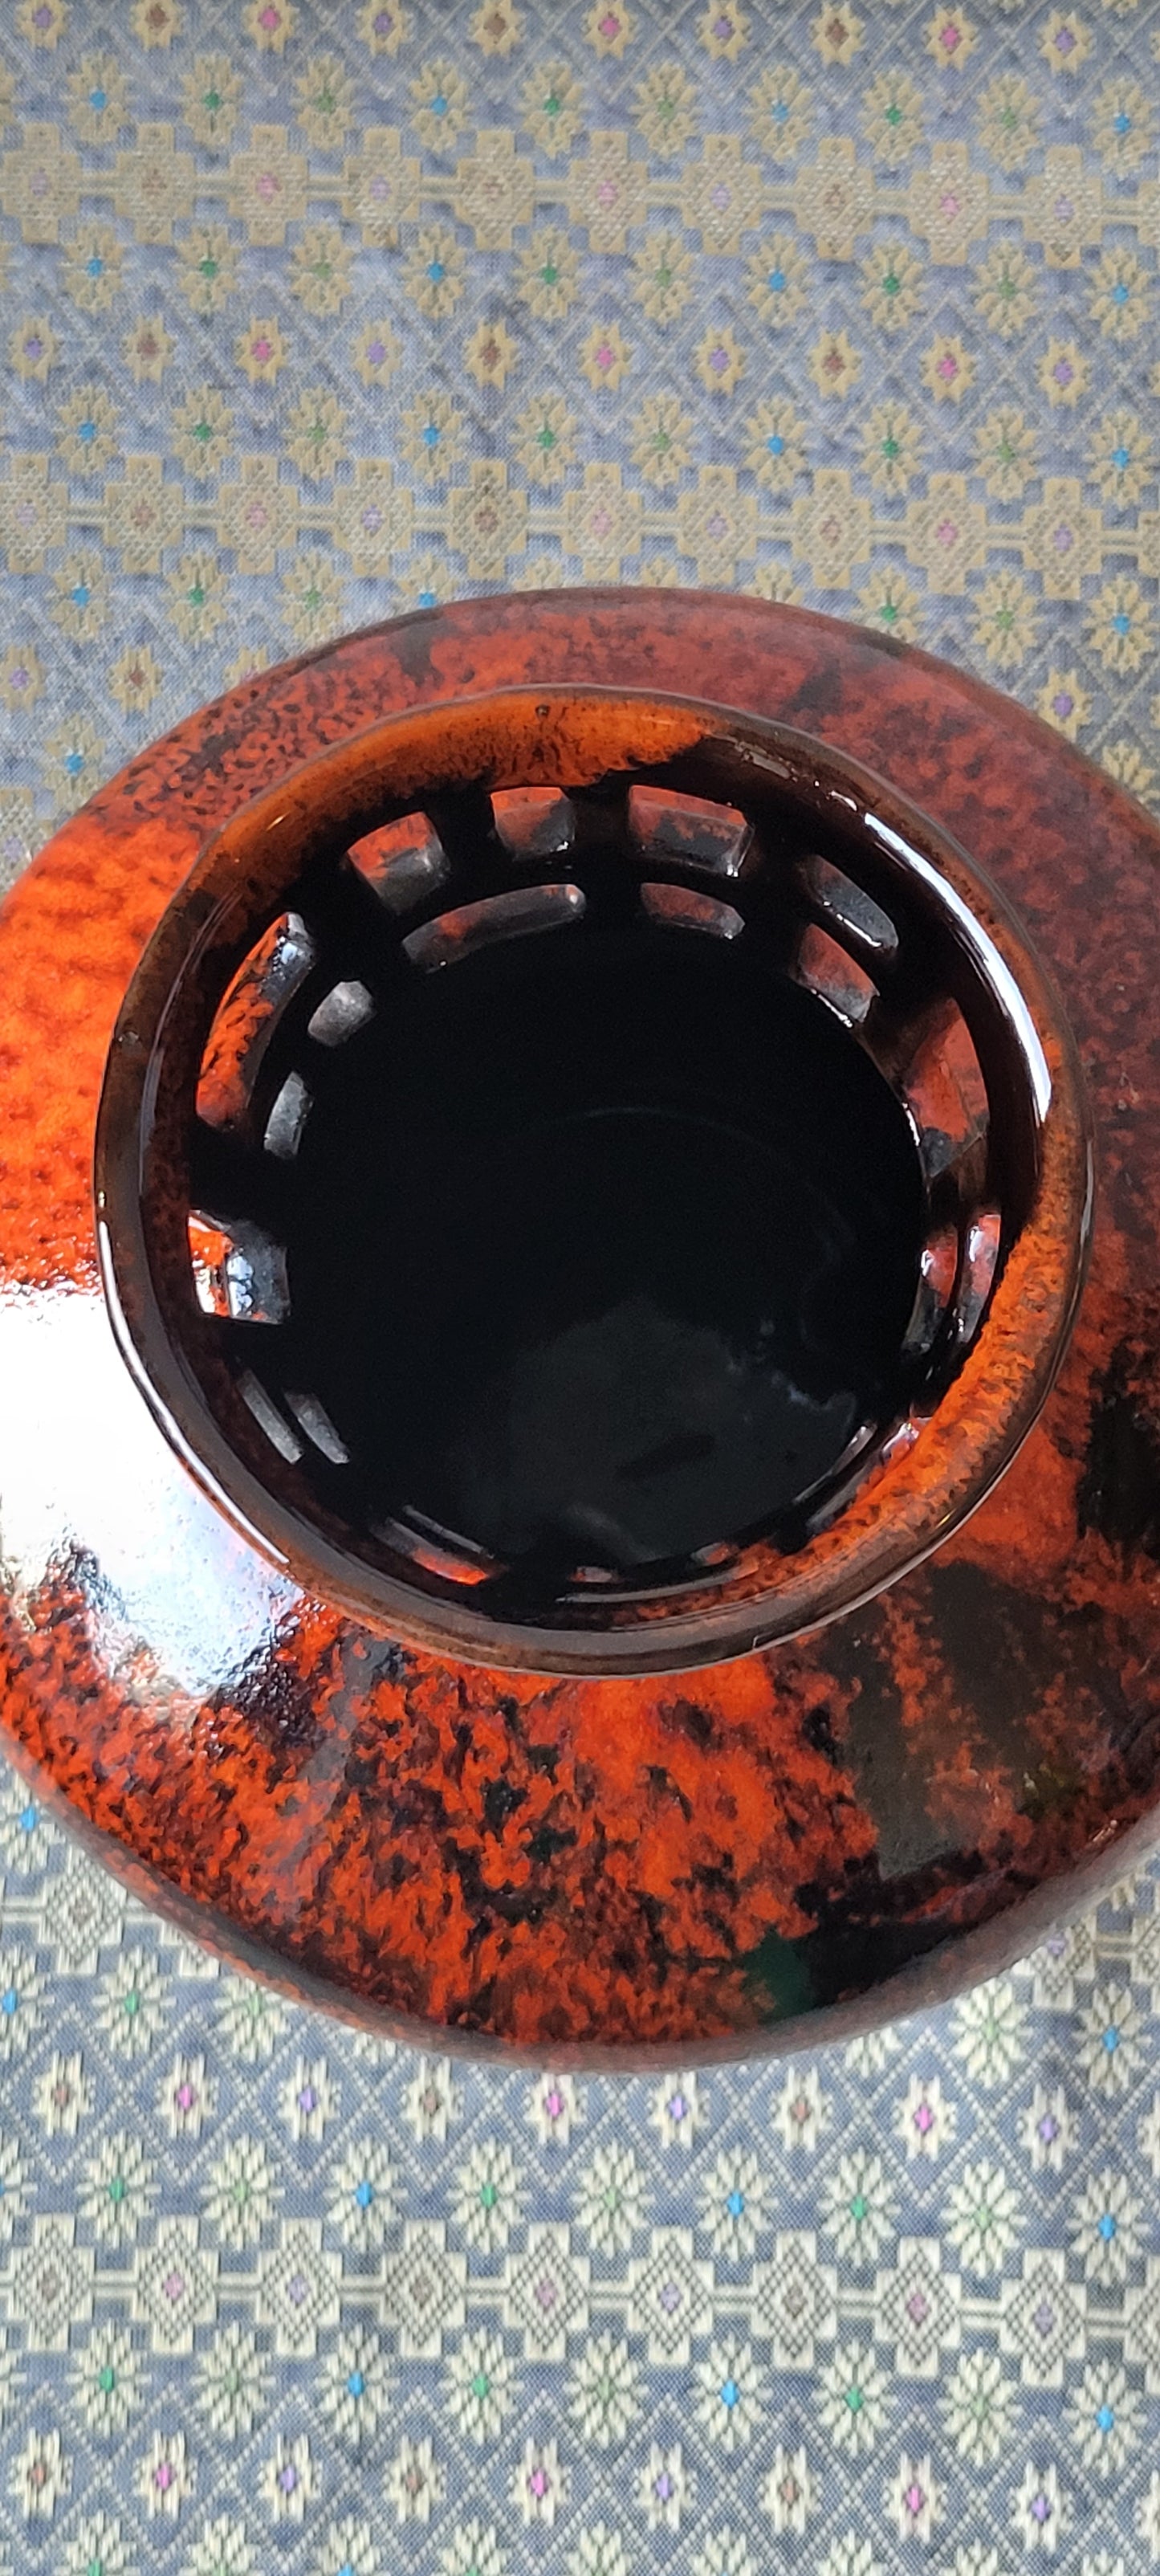 60s Evangeline Pottery Québec Vibrant Drip Glaze Vase